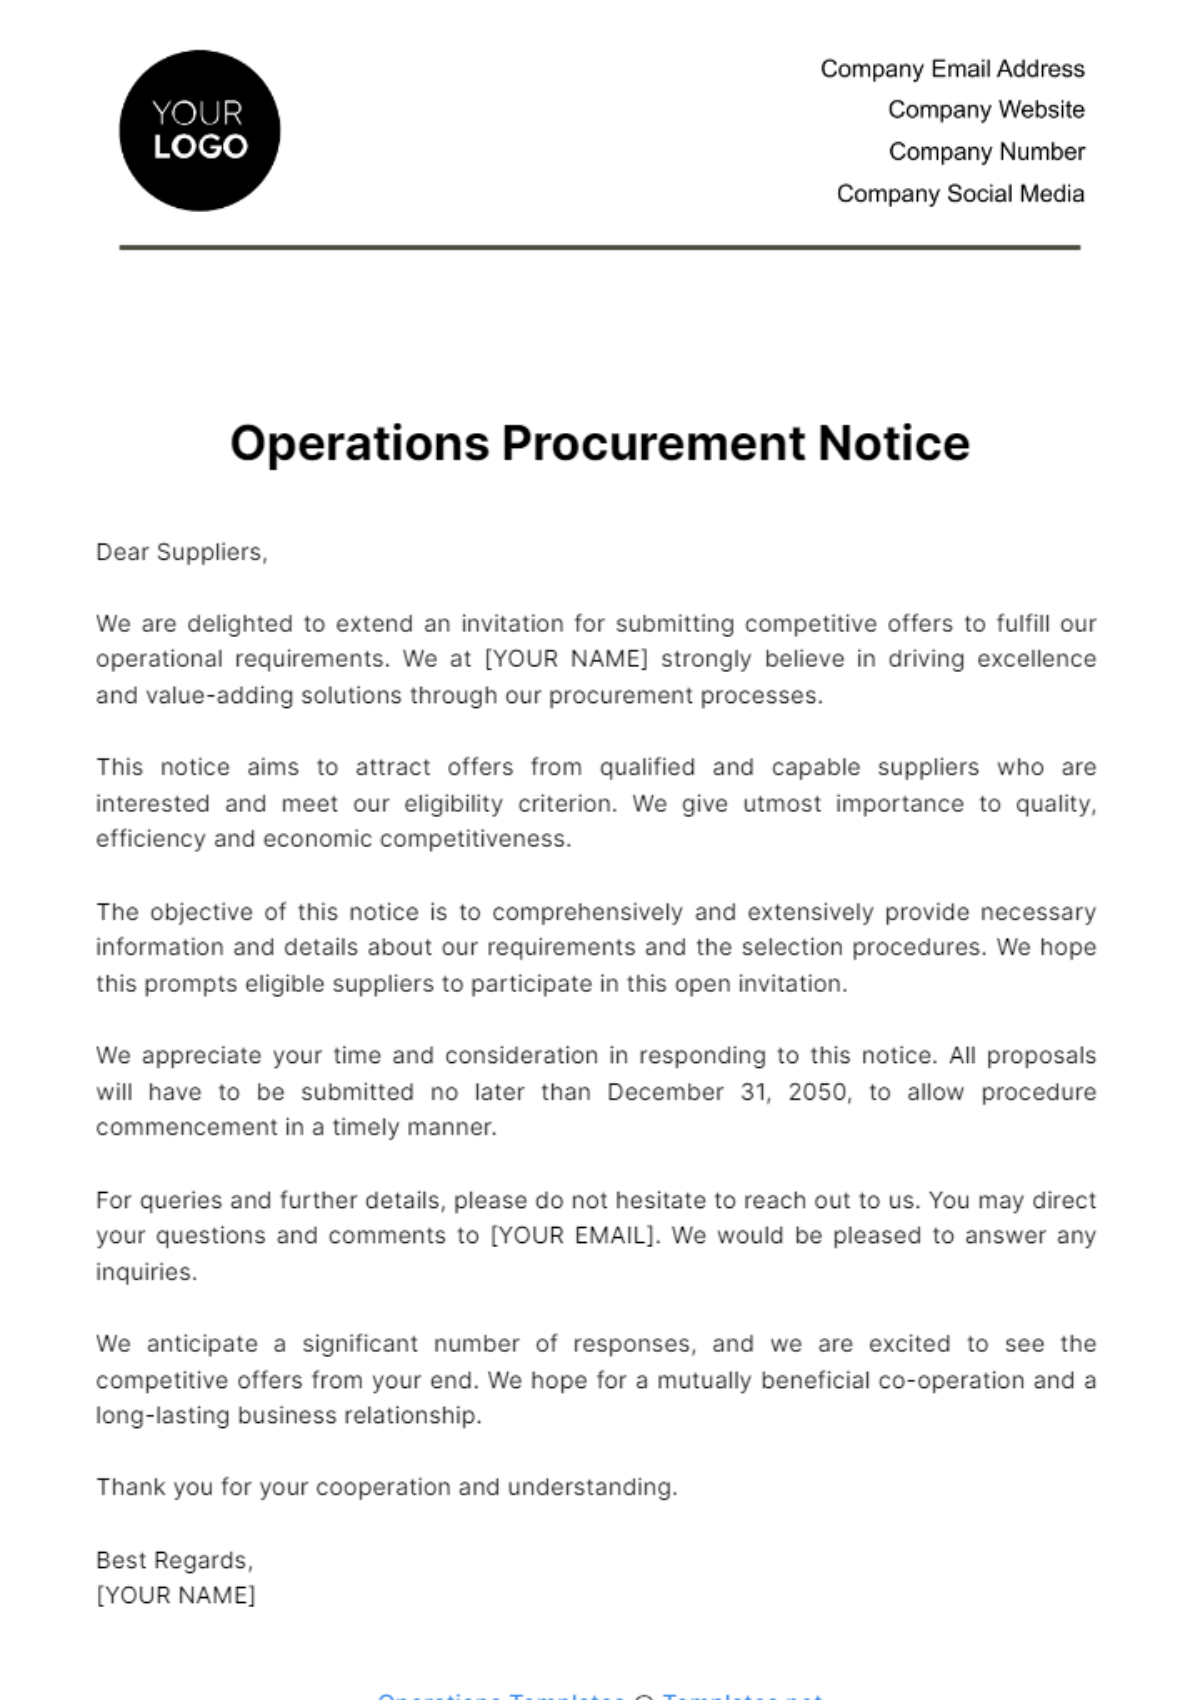 Operations Procurement Notice Template